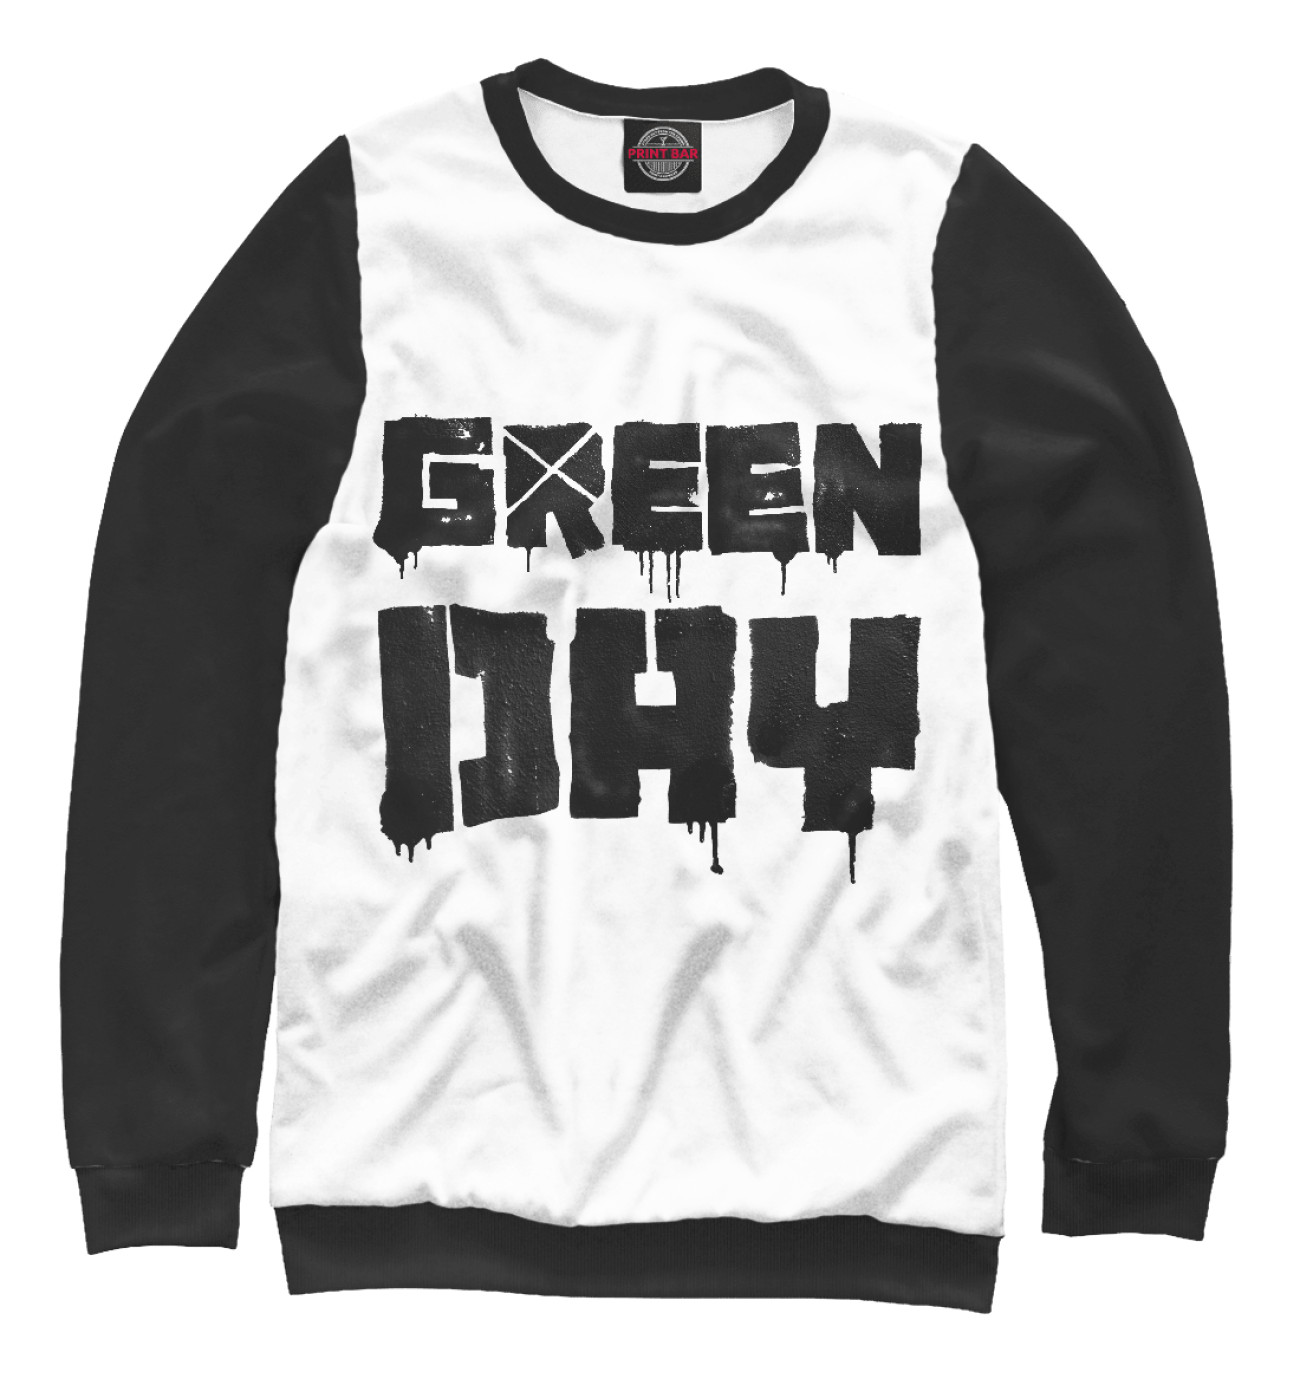 Женский Свитшот Green Day, артикул: GRE-547269-swi-1